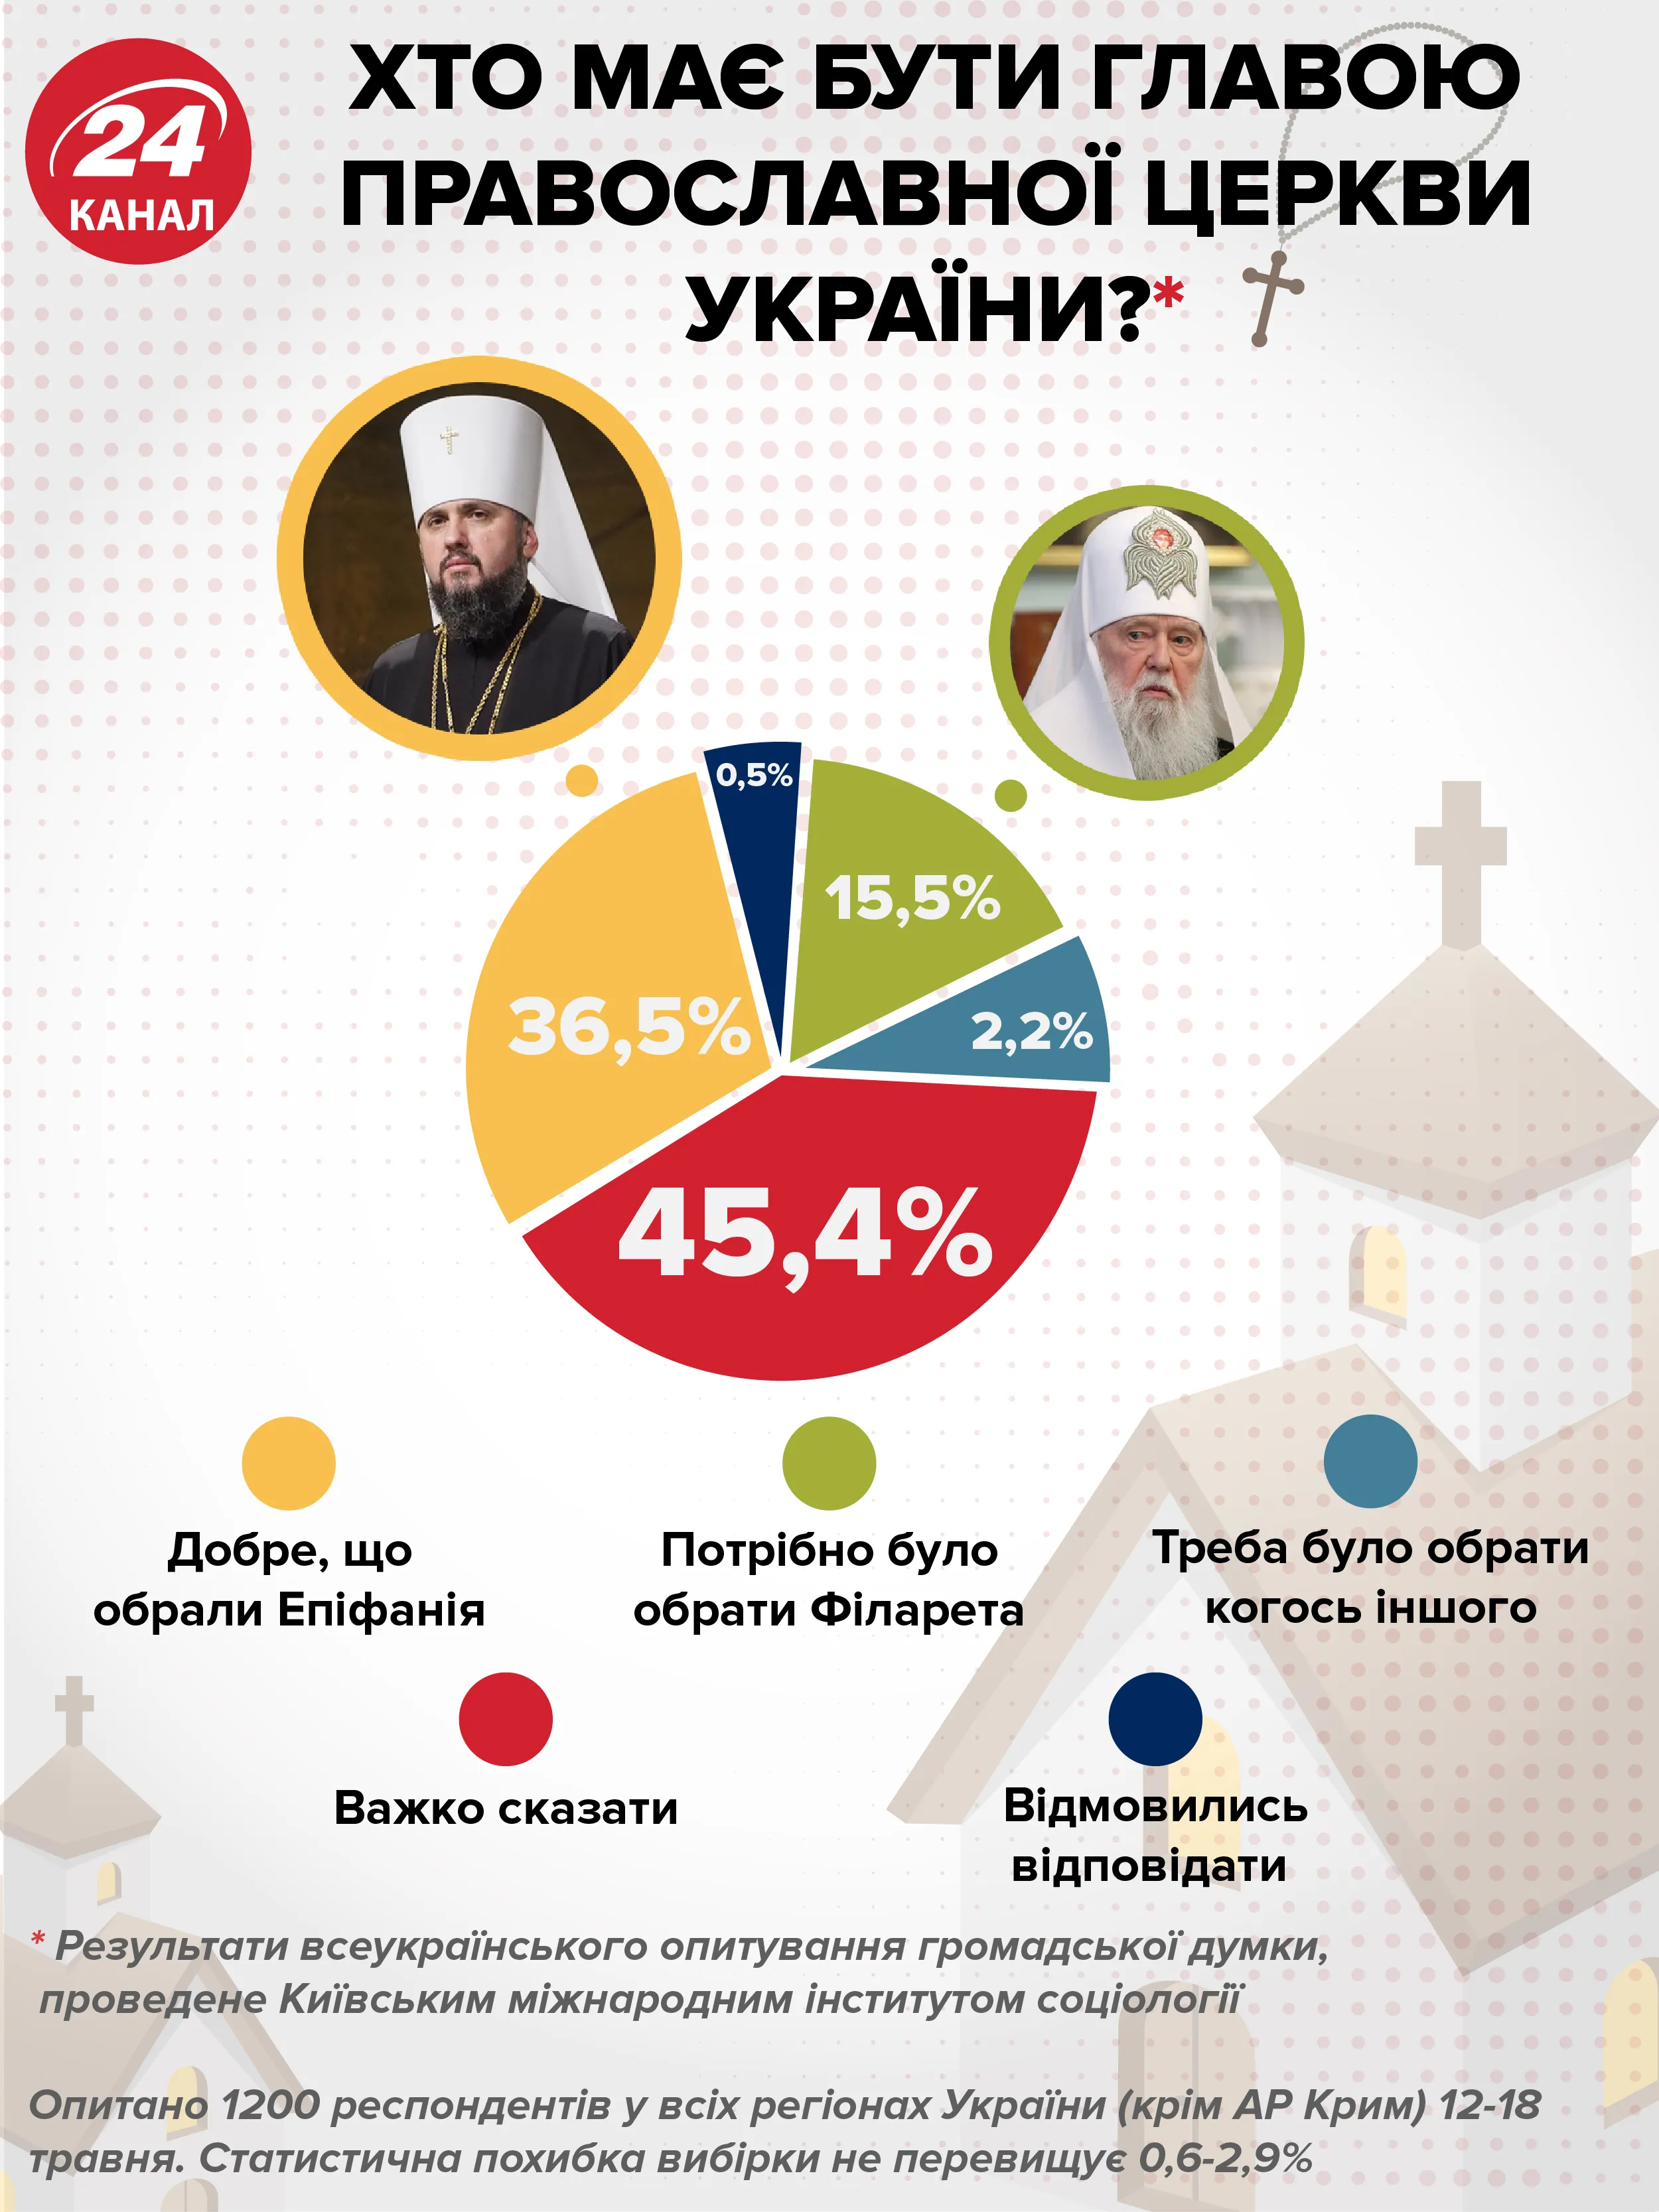 глава православної церкви україни, епіфаній філарет опитування